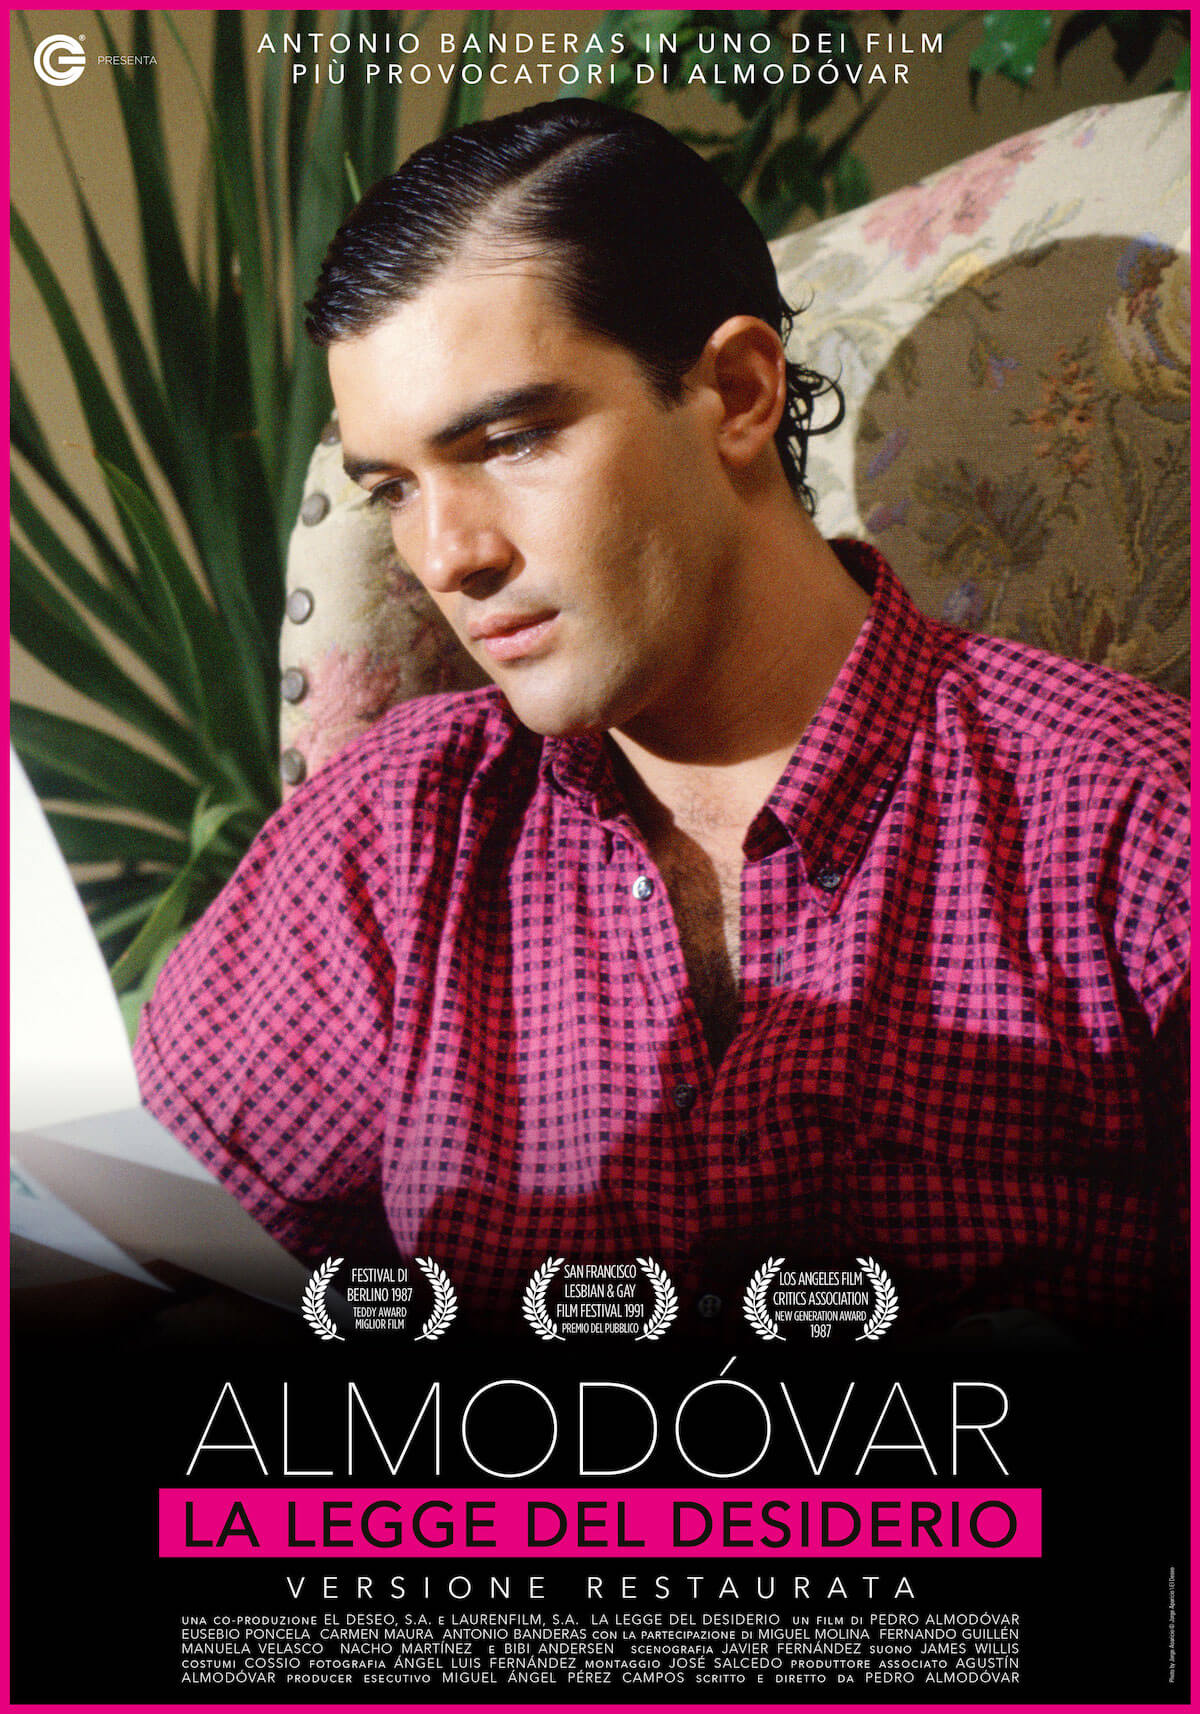 Pedro Almodovar, 5 suoi film di culto tornano nei cinema d'Italia. Poster e trailer - la legge del desiderio - Gay.it